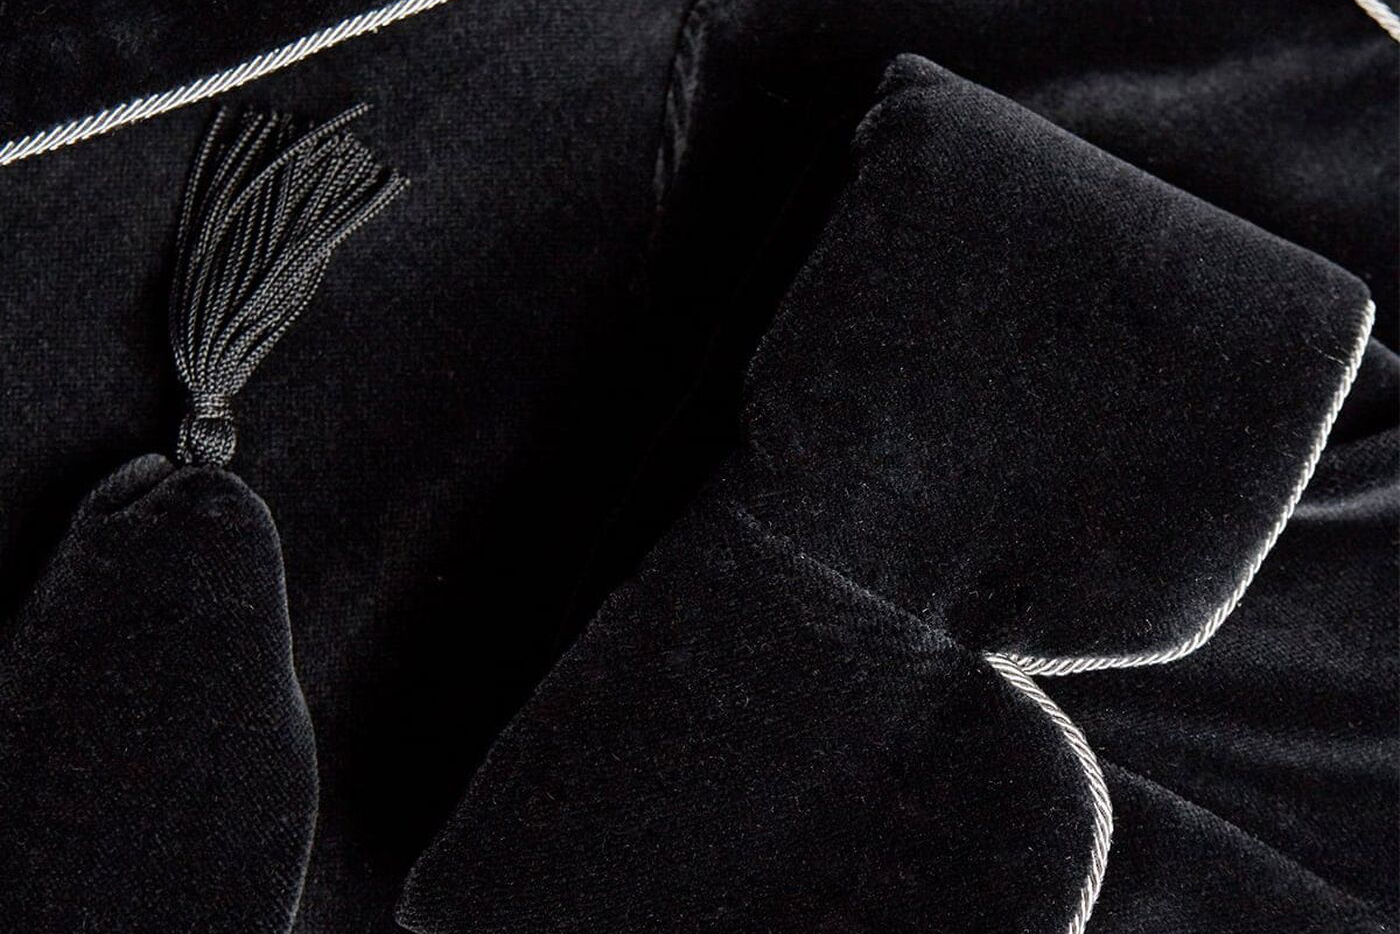  Men's Smoking Jacket Custom Made Velvet Smoking Jacket Robe  Burgundy Fully Lined (S) : Clothing, Shoes & Jewelry